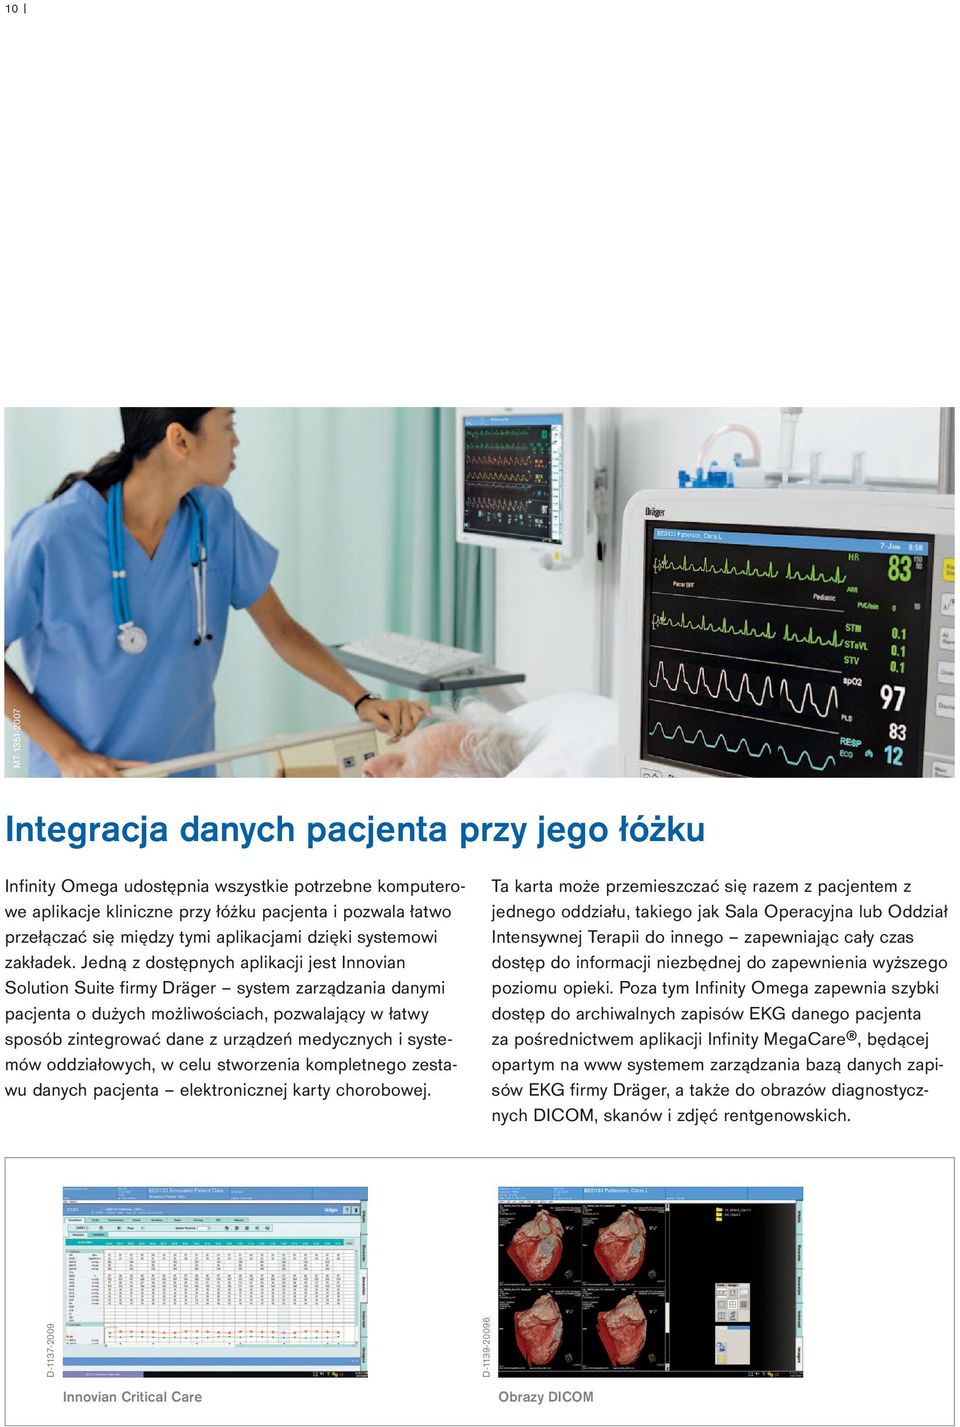 Jedną z dostępnych aplikacji jest Innovian Solution Suite firmy Dräger system zarządzania danymi pacjenta o dużych możliwościach, pozwalający w łatwy sposób zintegrować dane z urządzeń medycznych i